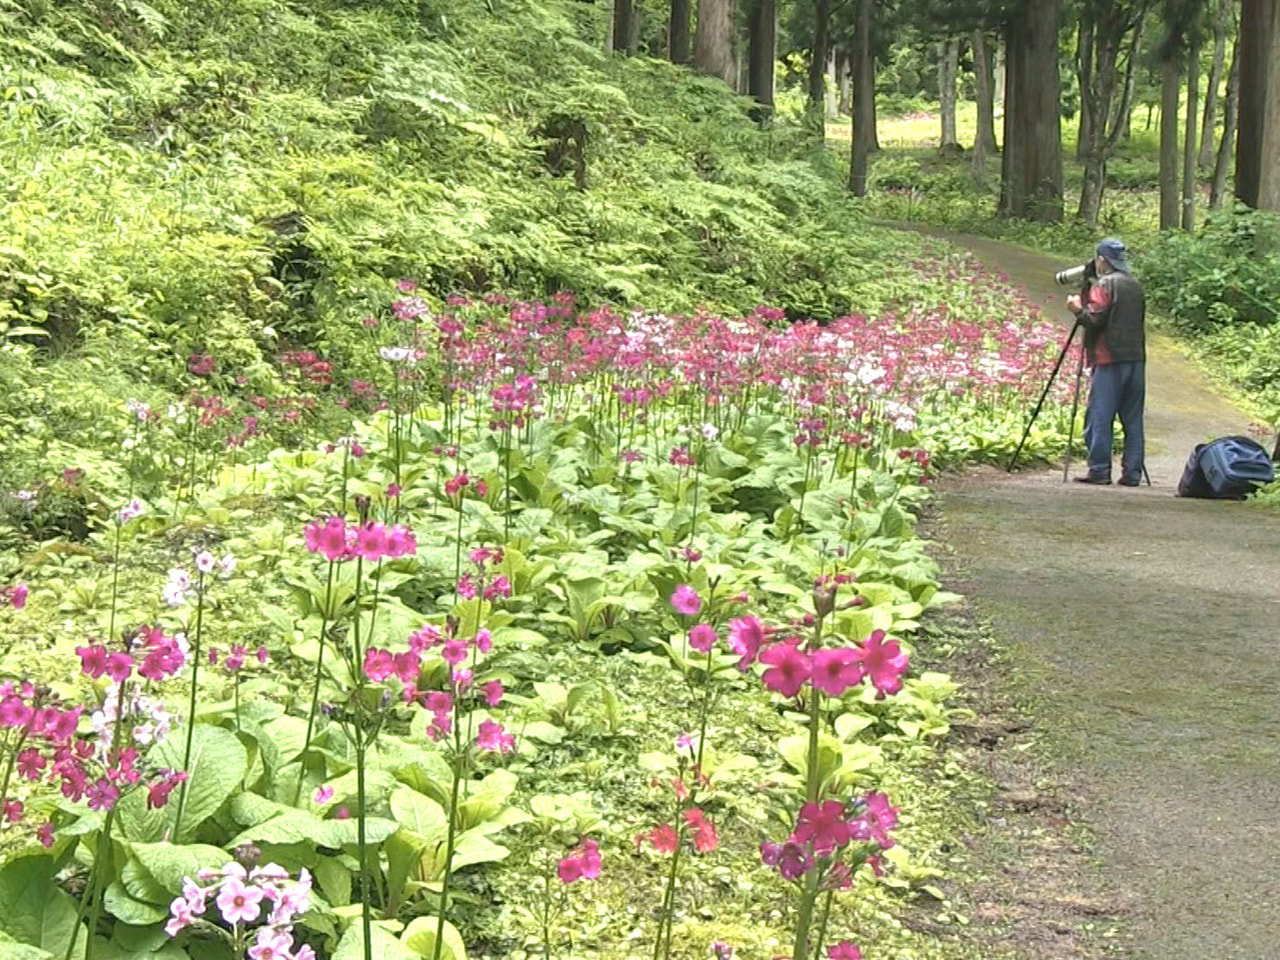 高山市にある花の森・四十八滝山野草花園でクリンソウの花が見ごろを迎え、訪れた人た...